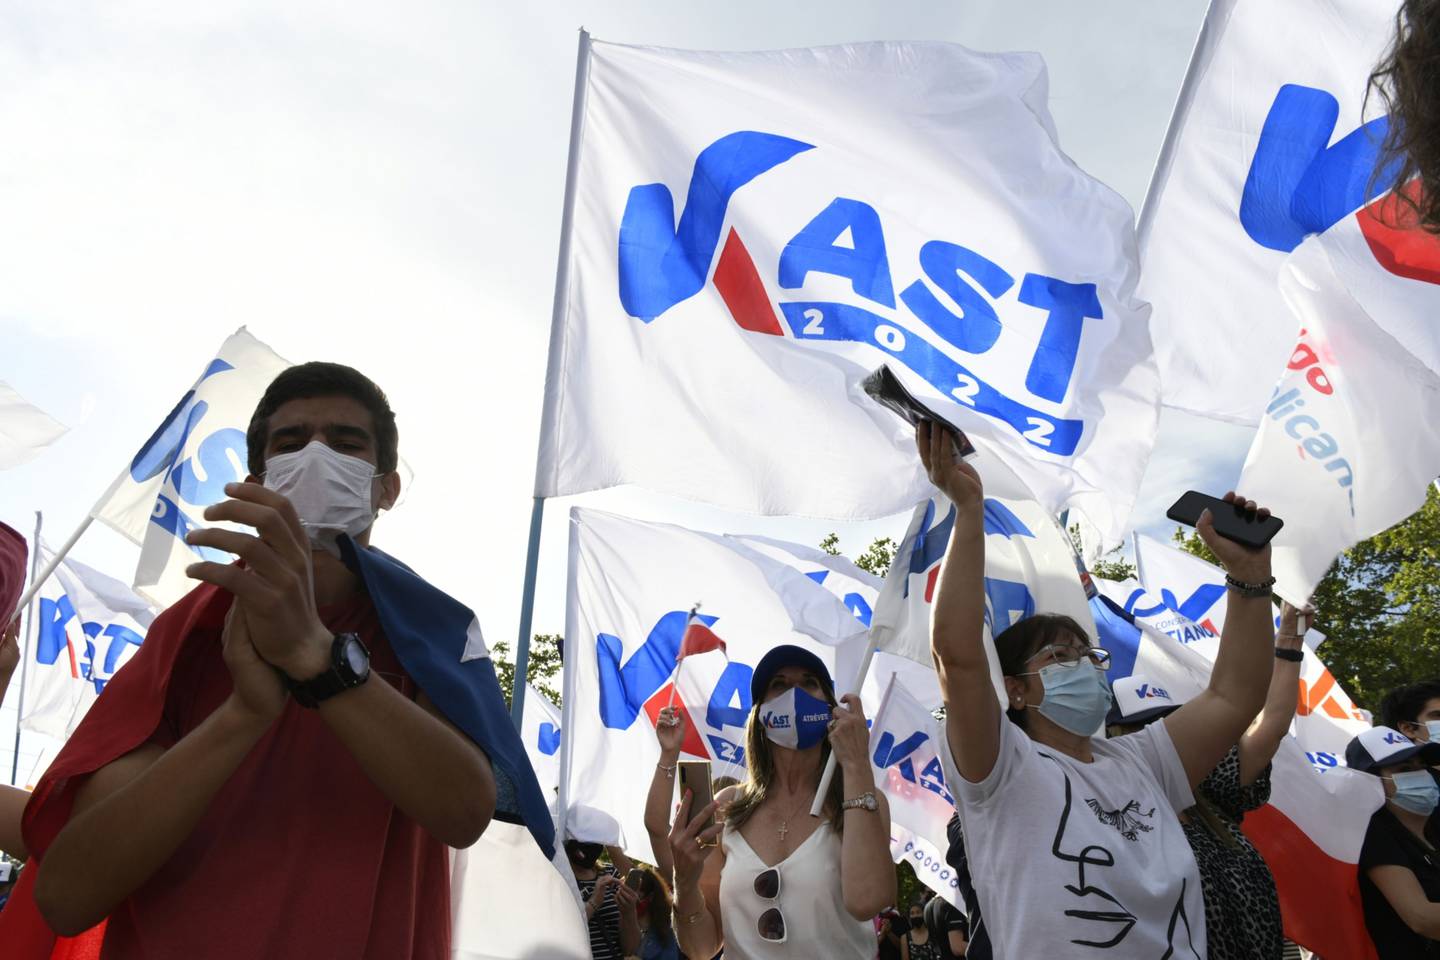 Simpatizantes durante un acto de campaña de Kast en Santiago. Fotógrafo: Tamara Merino/Bloombergdfd